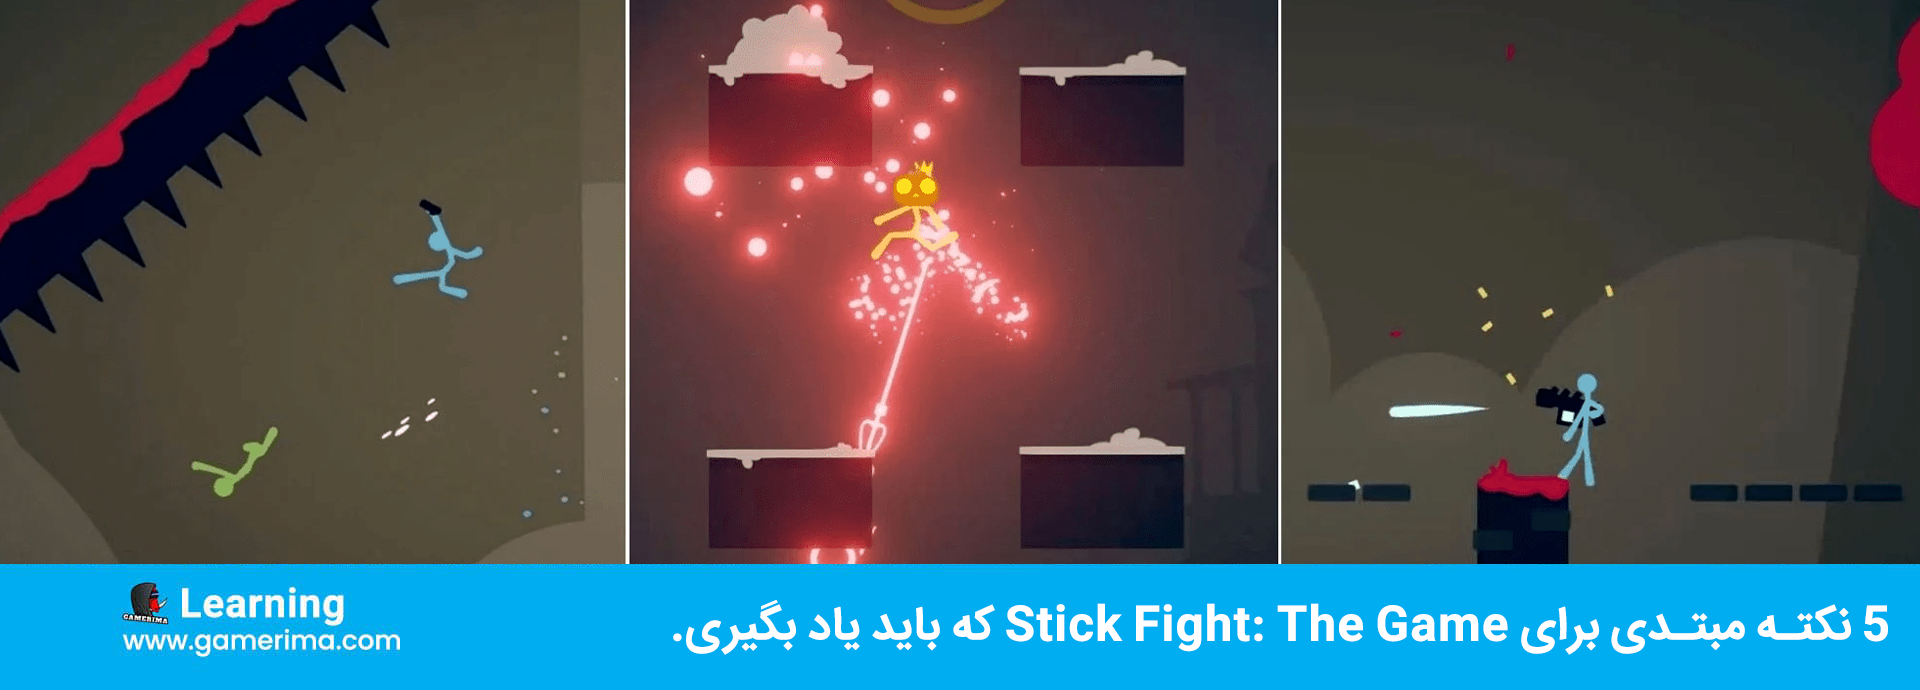 ۵ نکته مبتدی برای Stick Fight: The Game که باید یاد بگیری.